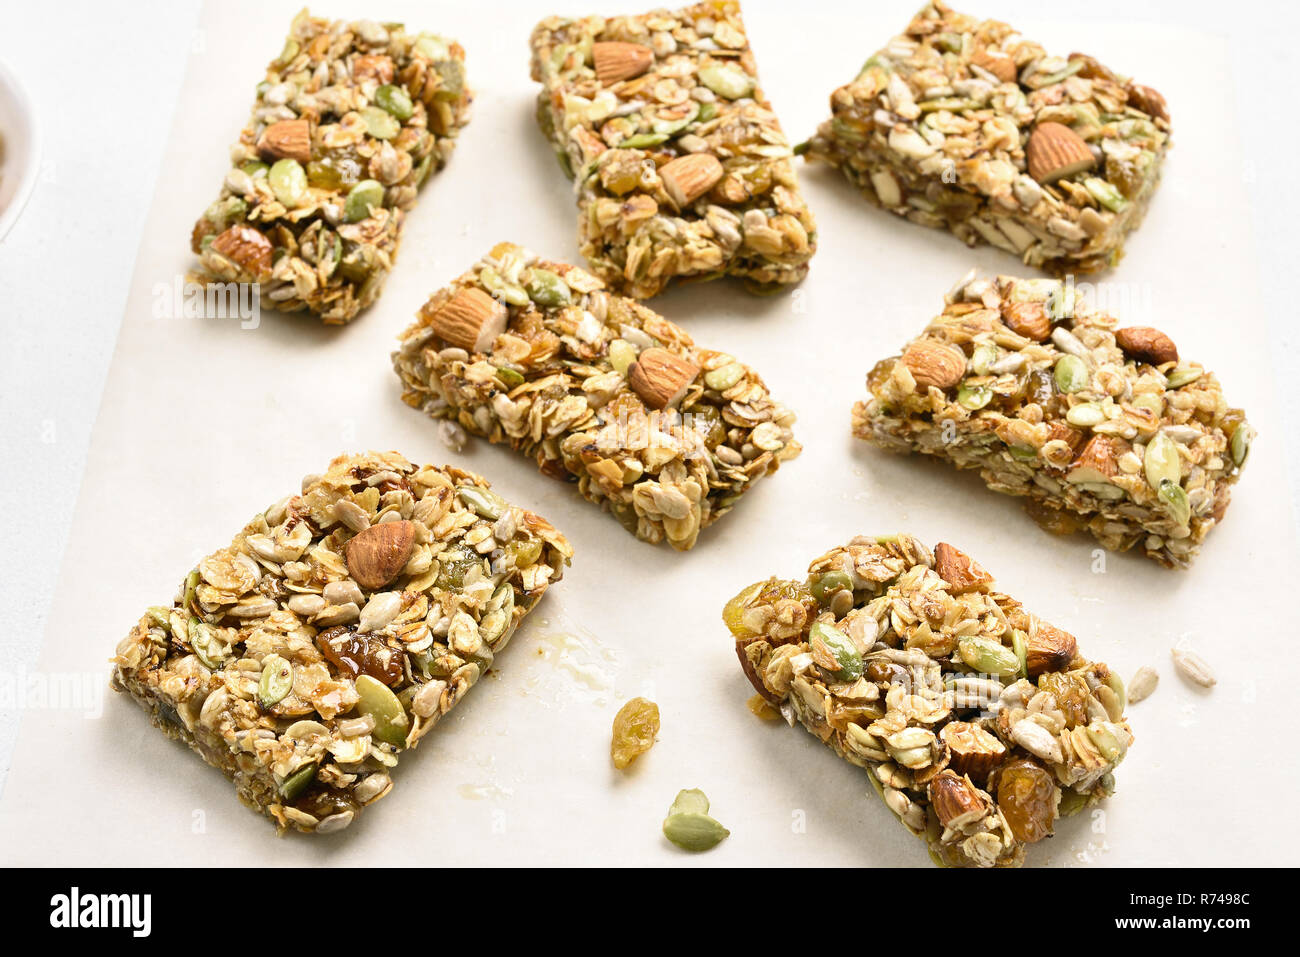 Healthy granola bar. Natural snack. Close up view Stock Photo